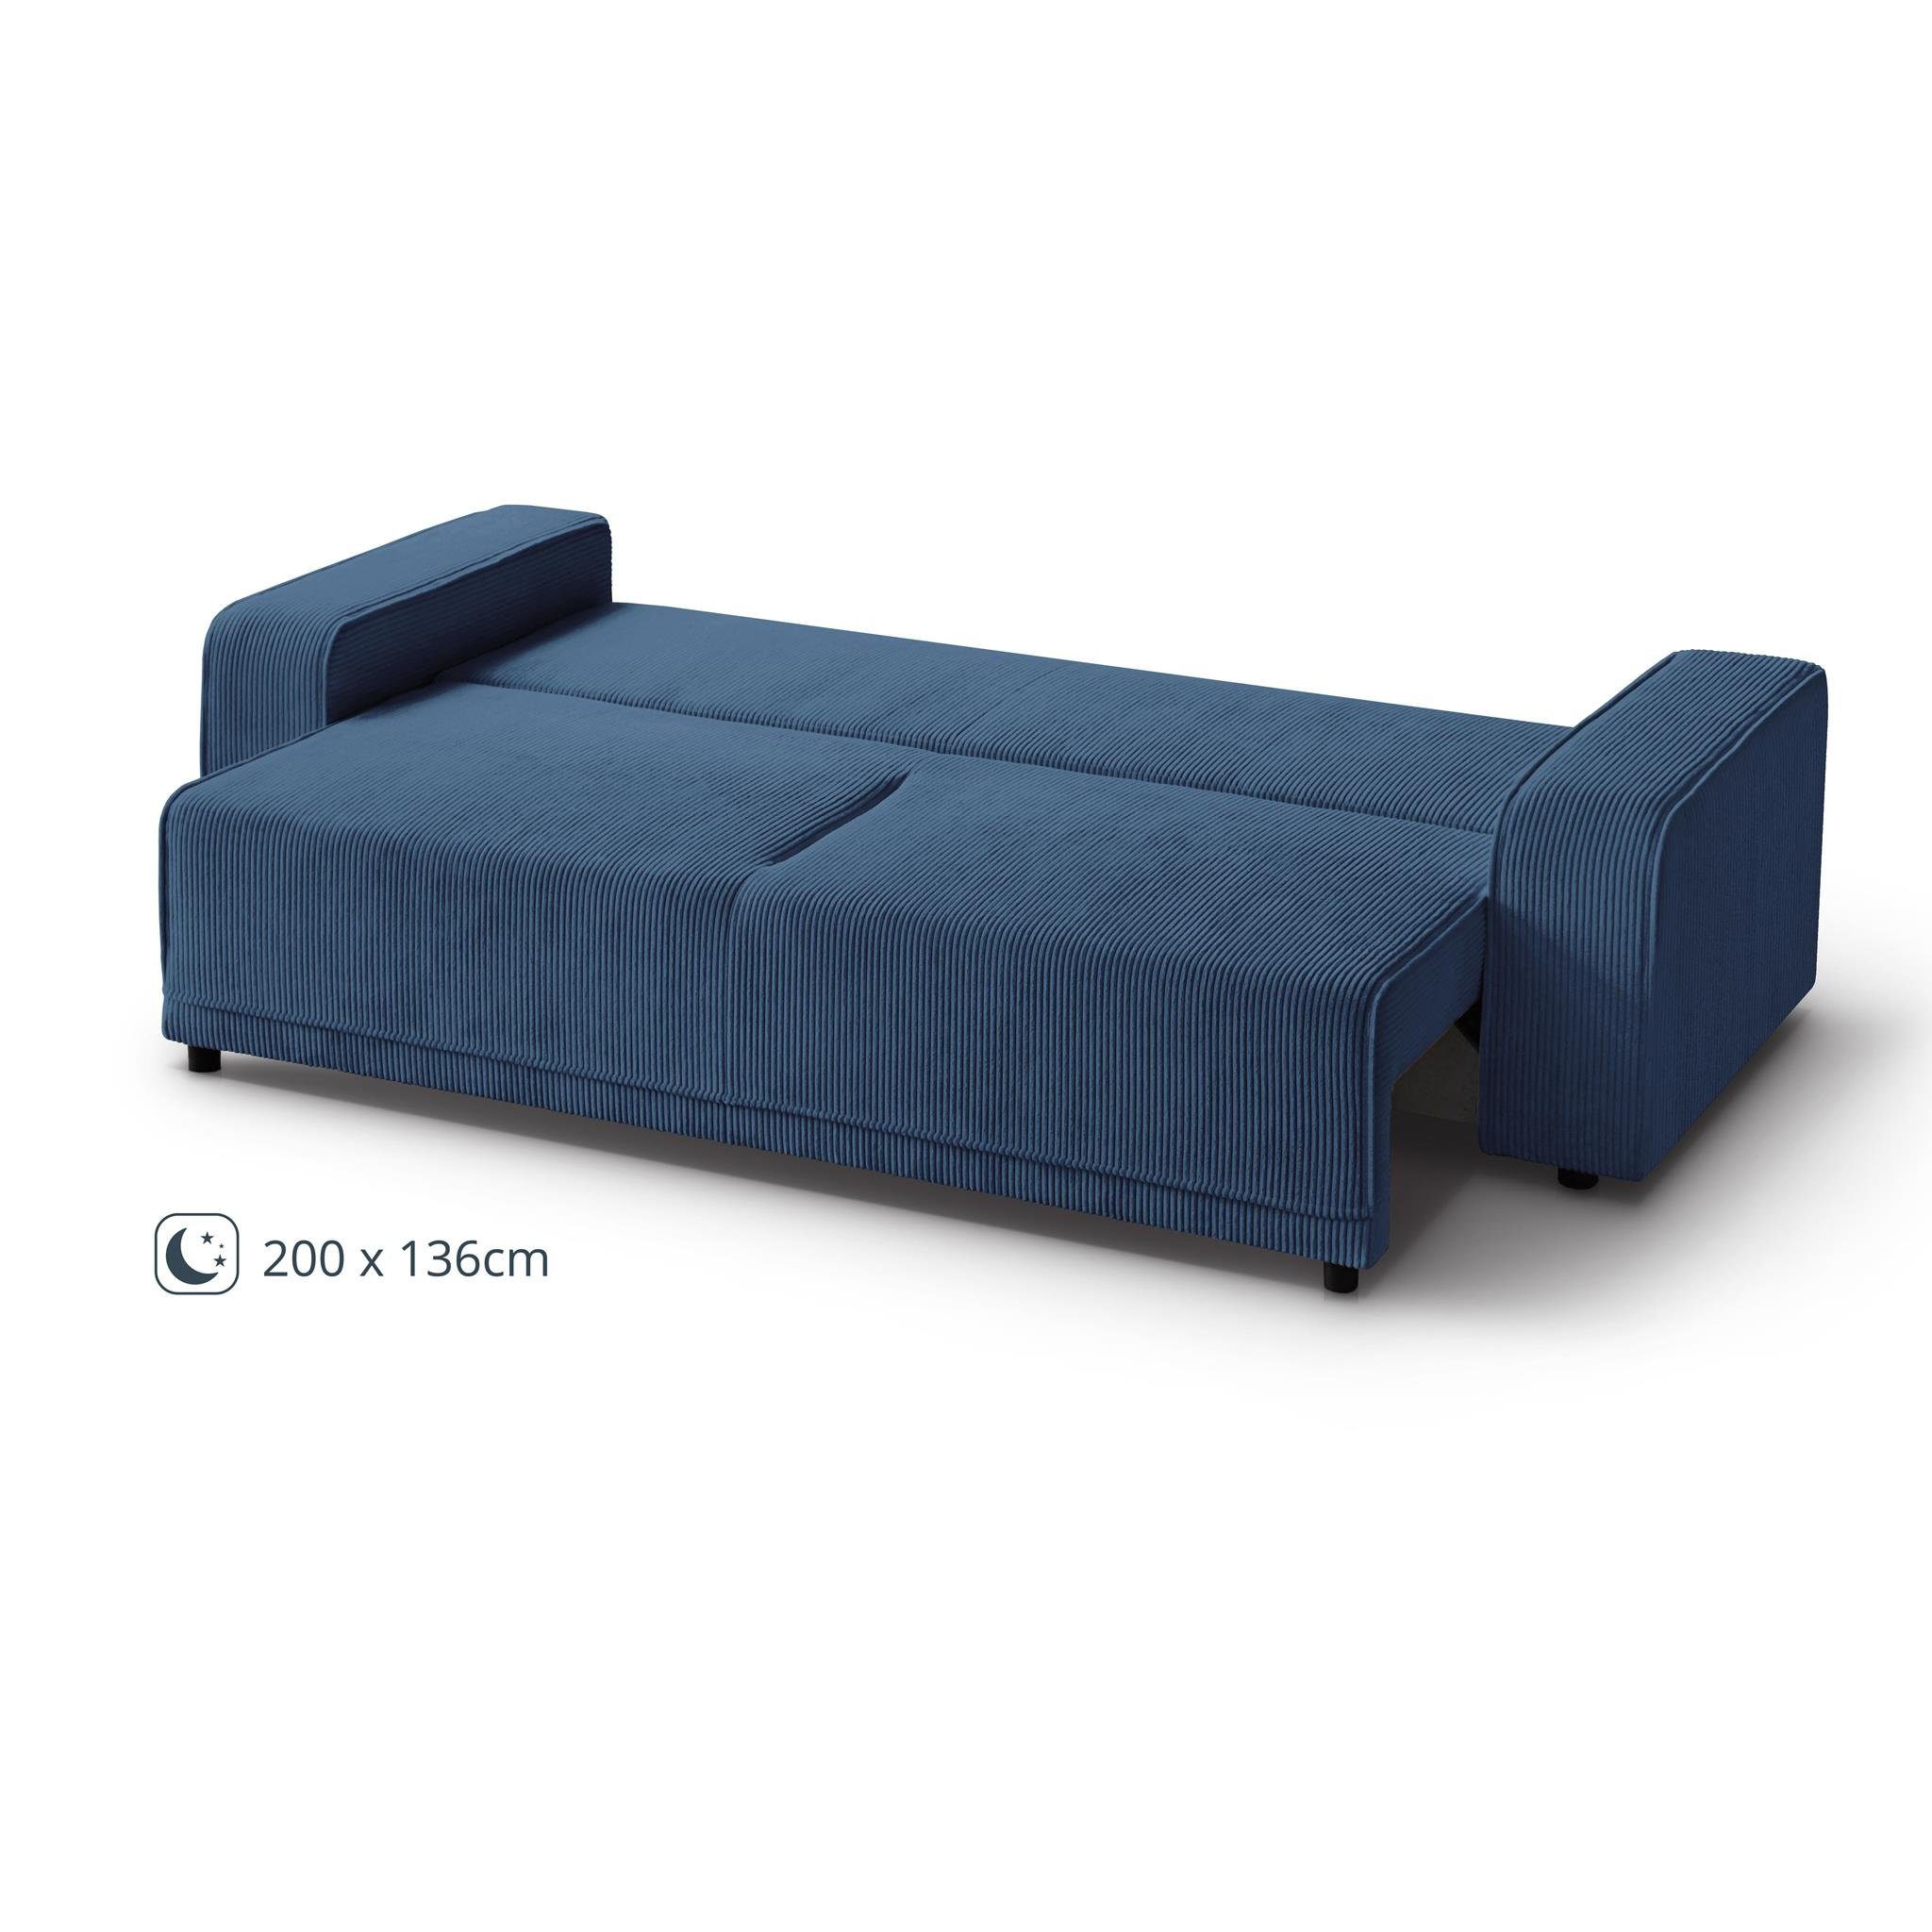 modernes Sofa, (poso Schlaffunktion, breite Schlafsofa Beautysofa Wellenfedern, Design Bettkasten, Armlehnen Blau 05) PRIMO,